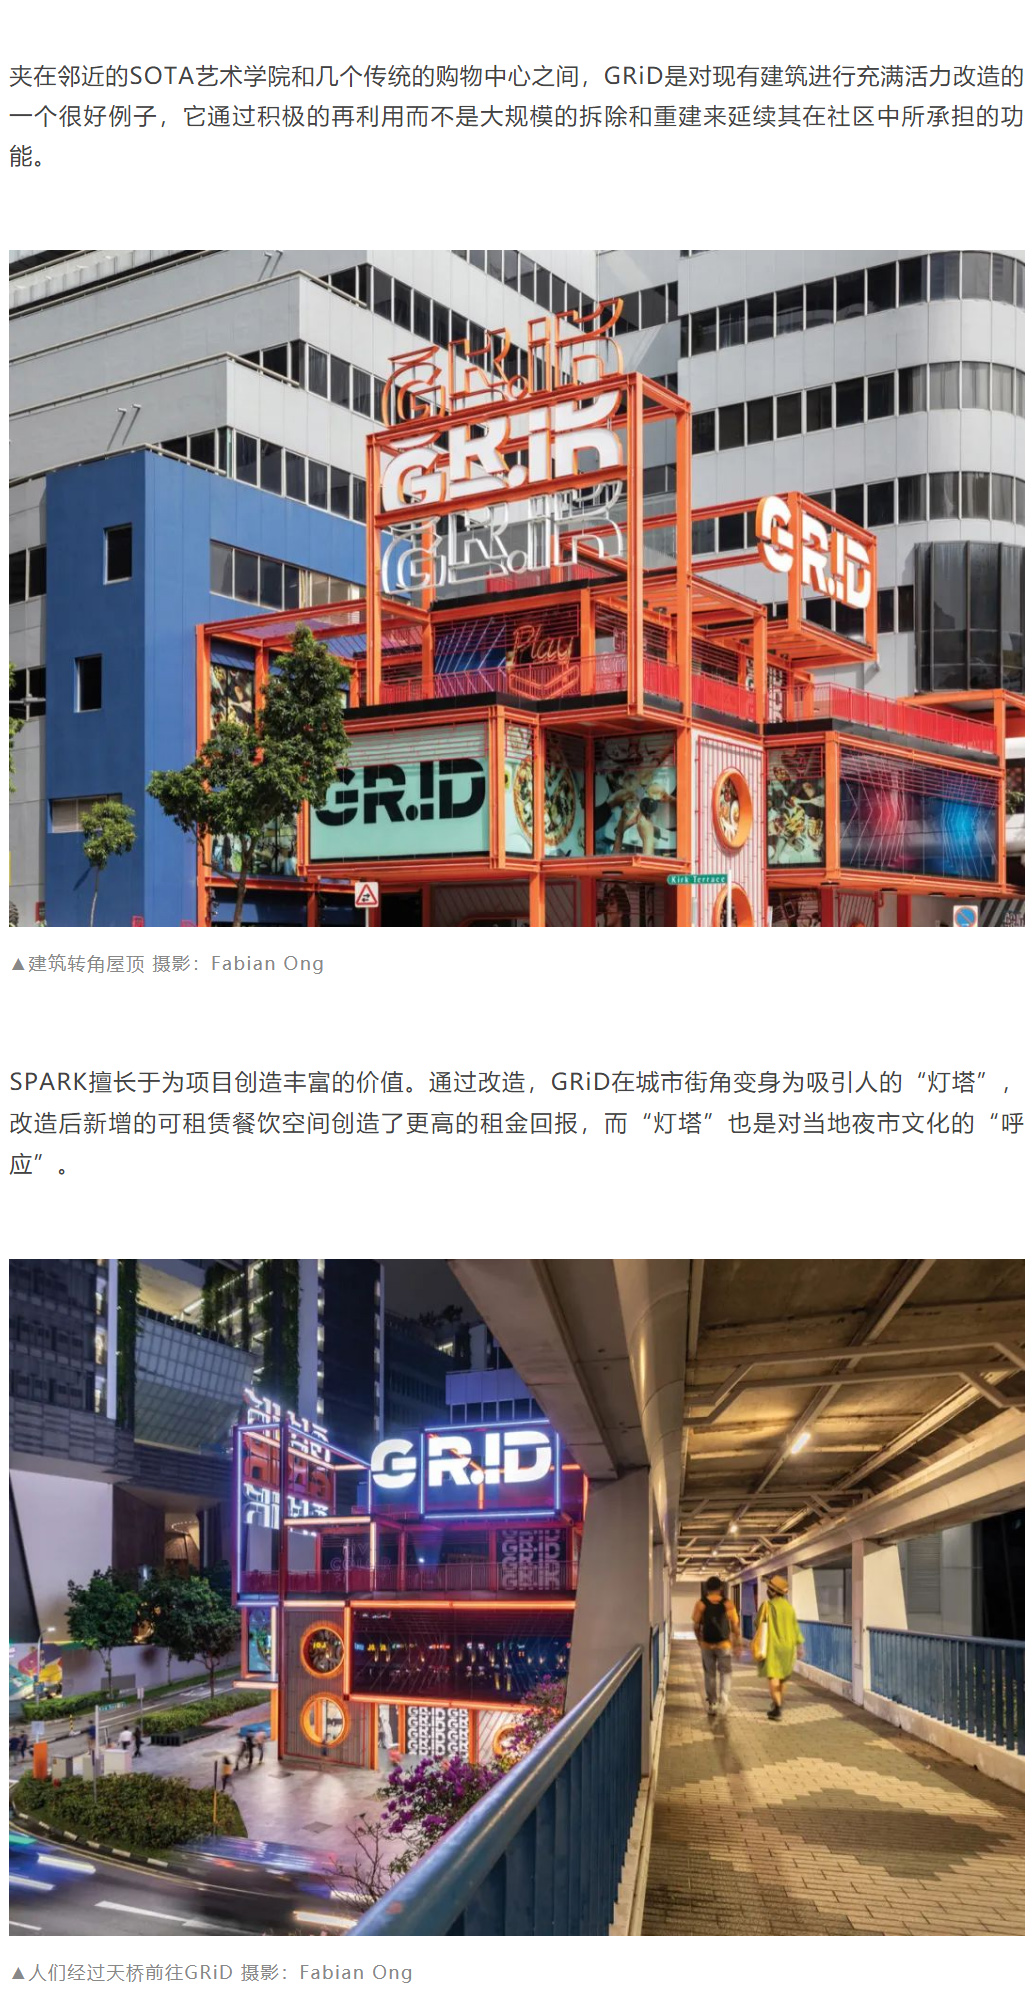 迭新作品-│-GRiD商业改造：艺术内核的建筑再利用by-SPARK_0002_图层-3.jpg